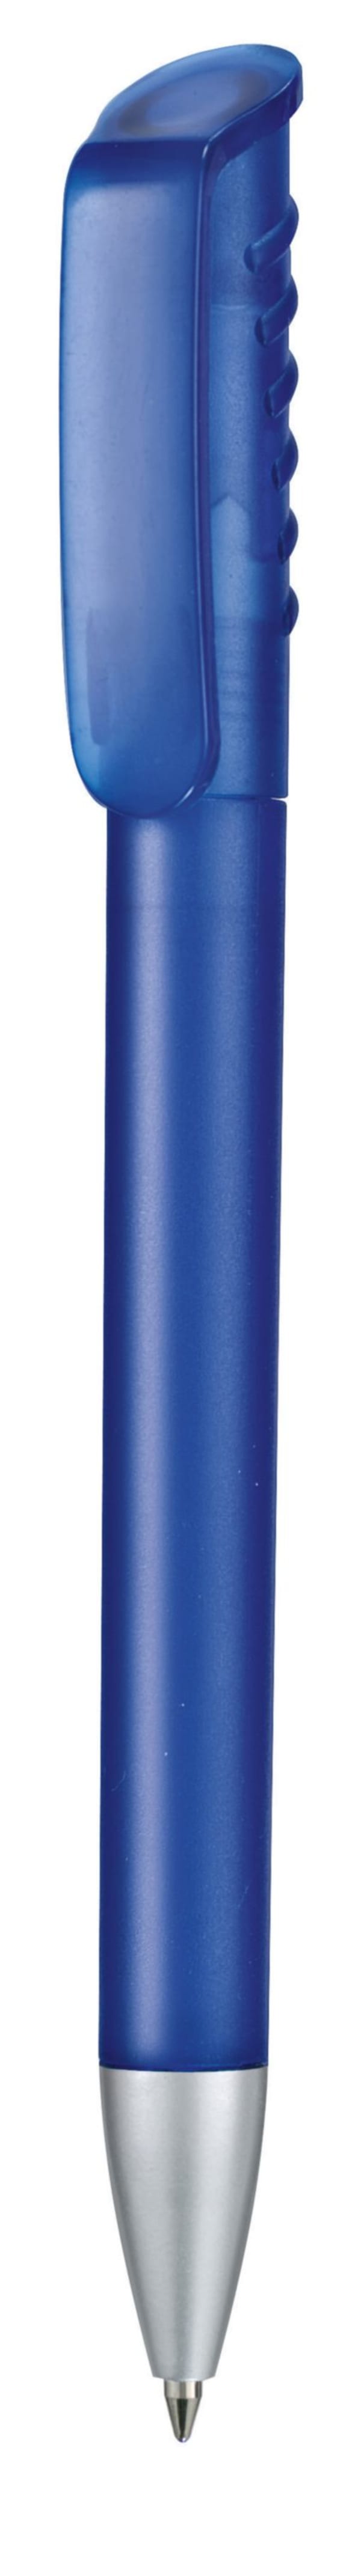 Kugelschreiber-Top-Spin-Frozen-Solid-blau-Blau-Frontansicht-1